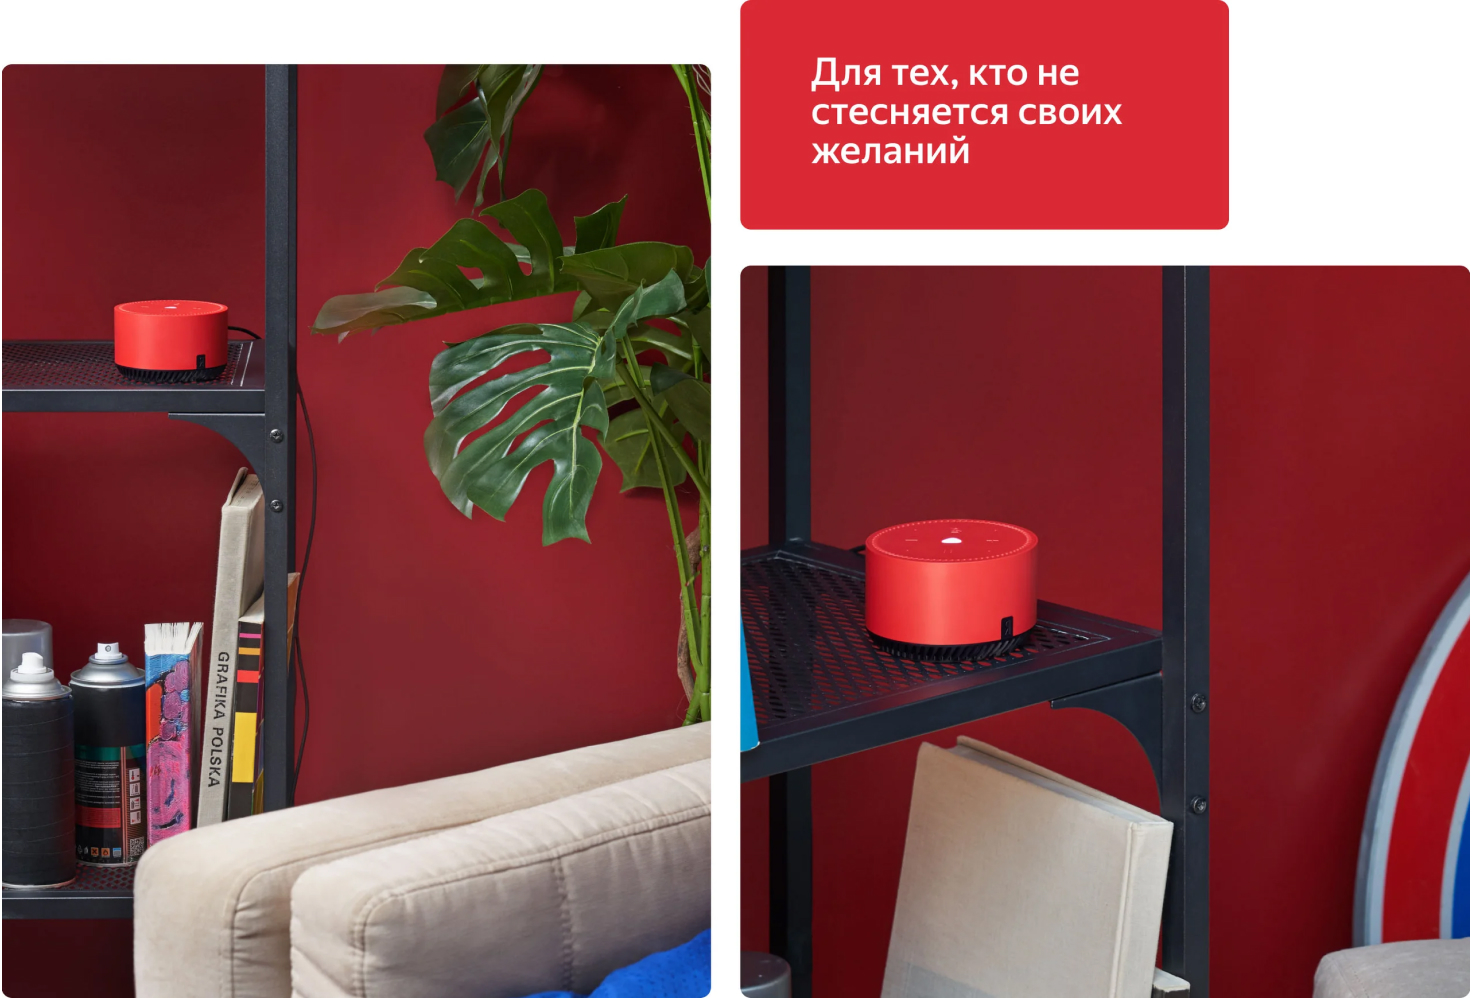 Акустическая система Yandex Яндекс.Станция Лайт Красная YNDX-00025 (Умная колонка с голосовым помощником)